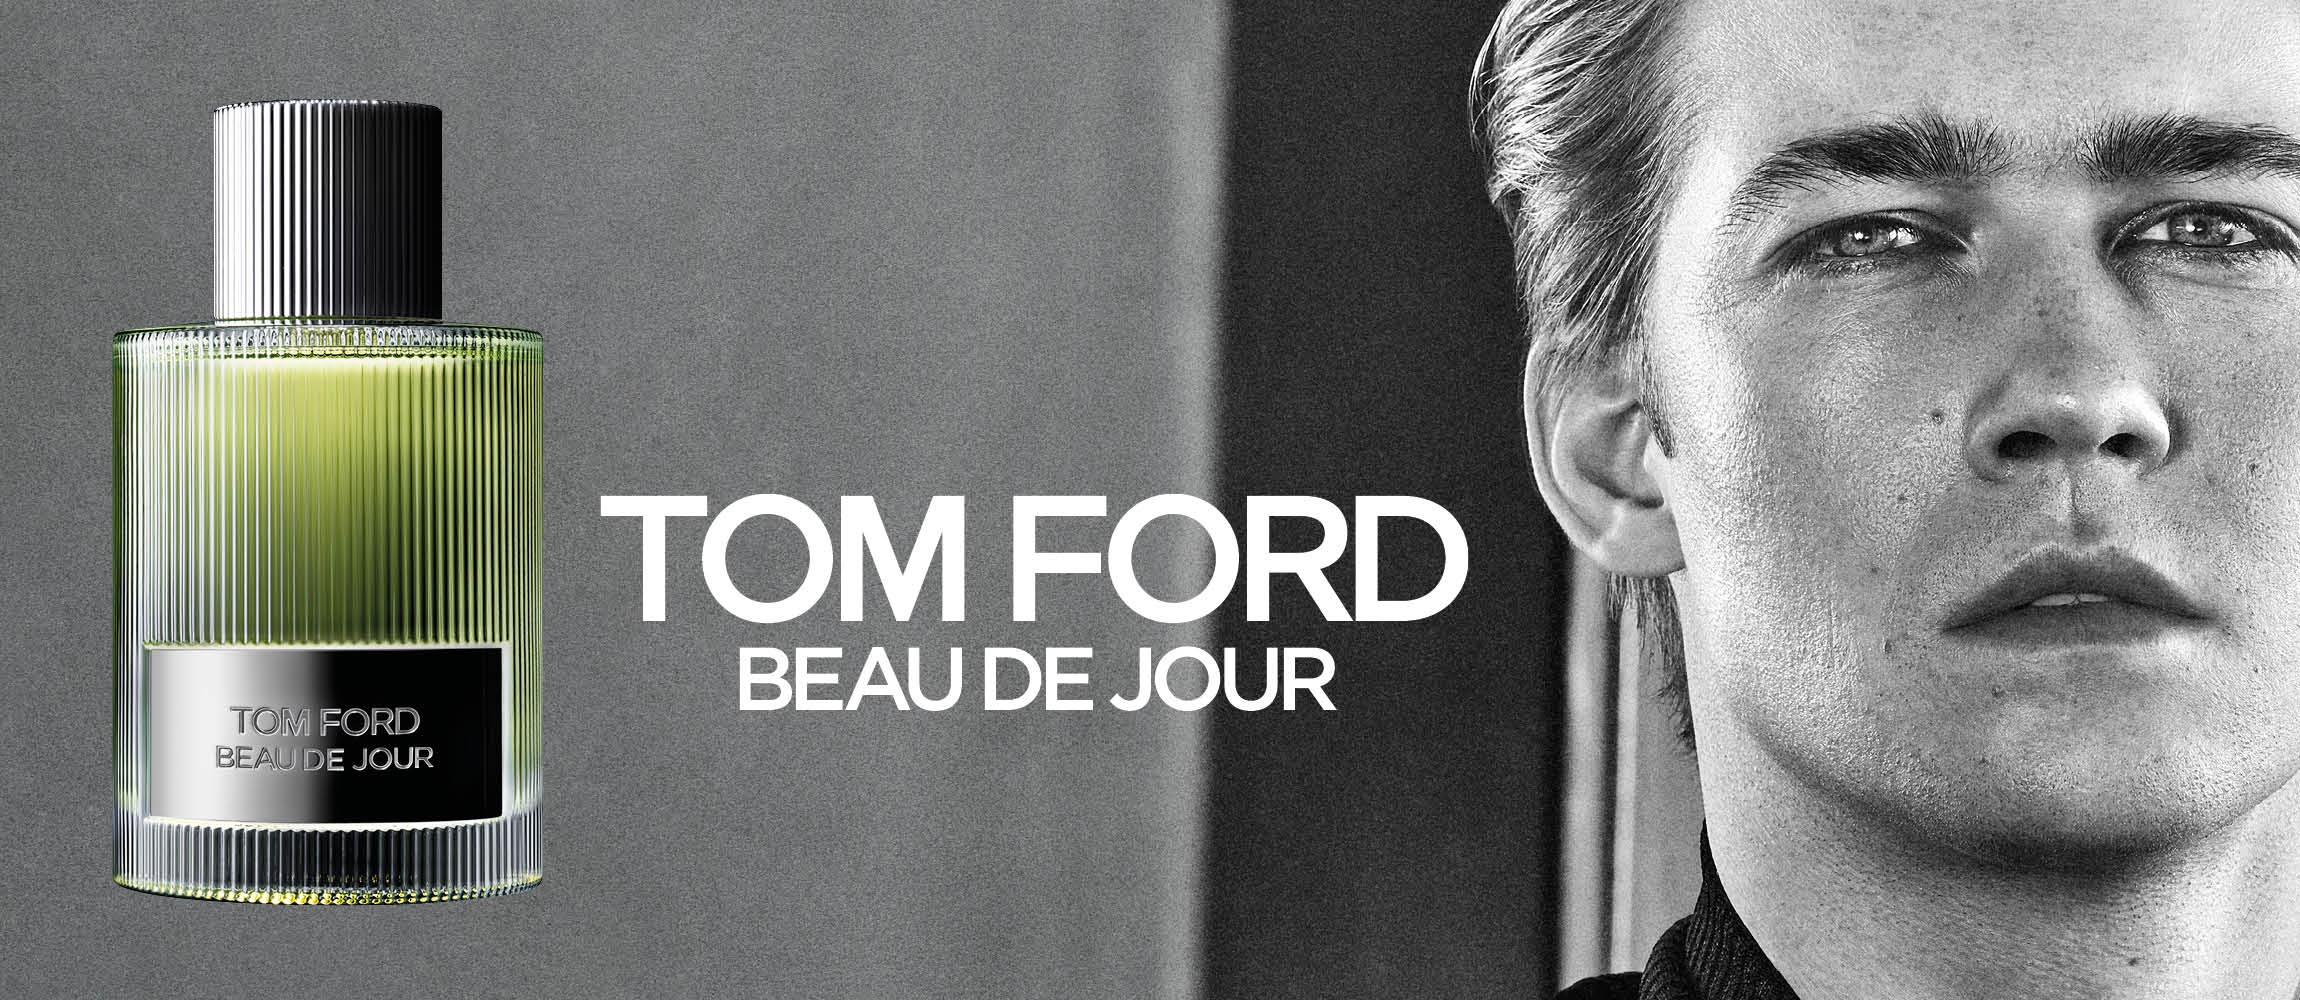 Tom Ford Beau de Jour